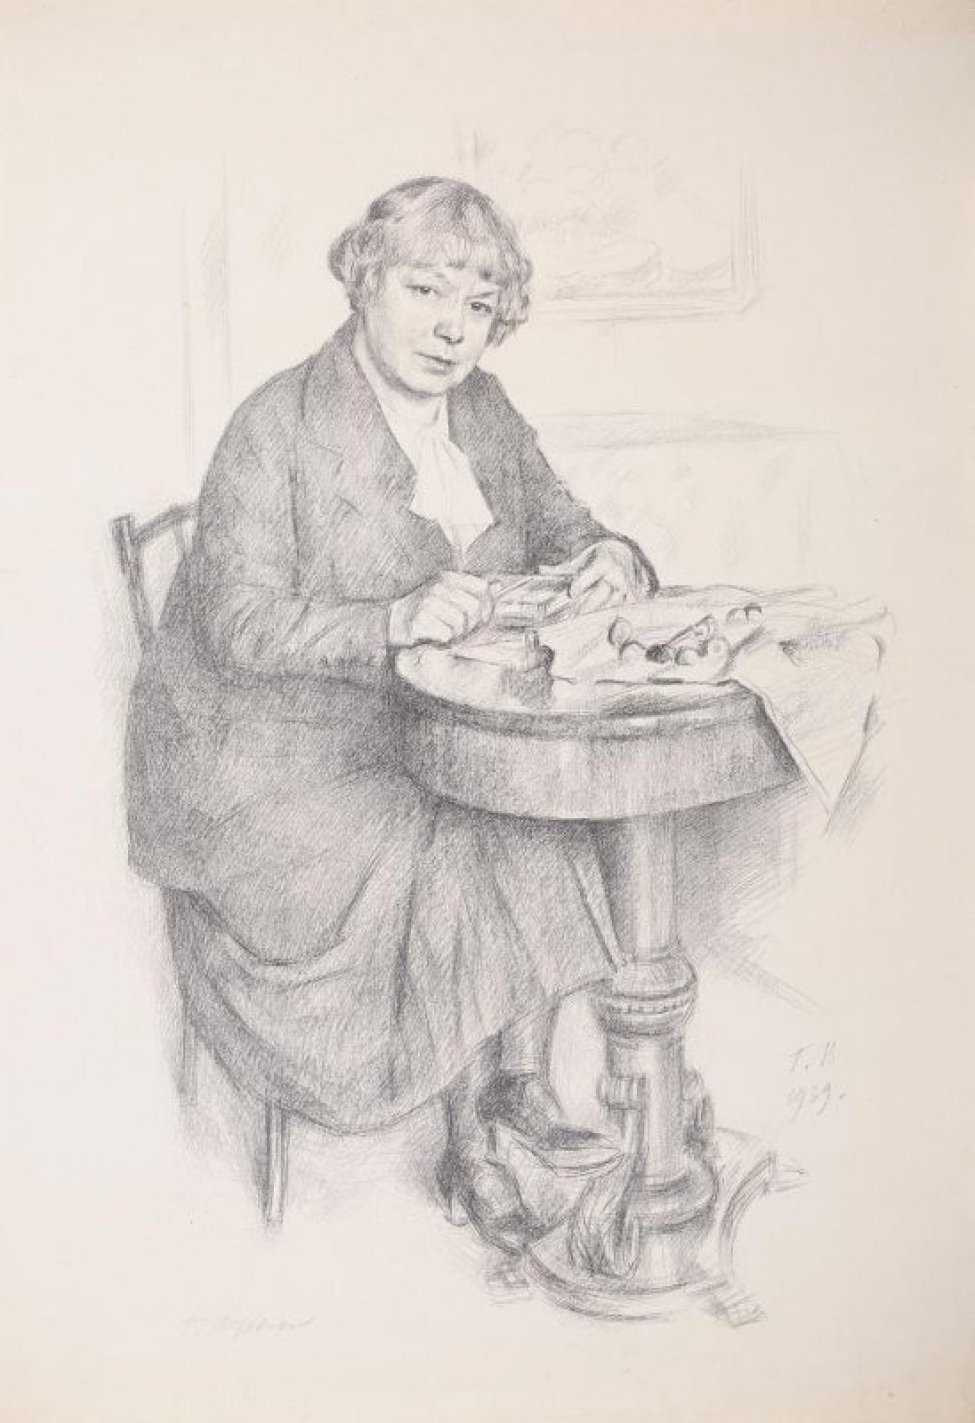 Изображена женщина средних лет в темном костюме и светлой блузке, стрижка короткая. Женщина сидит на стуле у круглого столика, на котором штихели-инструменты для гравирования и бумага.Справа внизу на изображении литографированная монограмма Г.В. 1939.